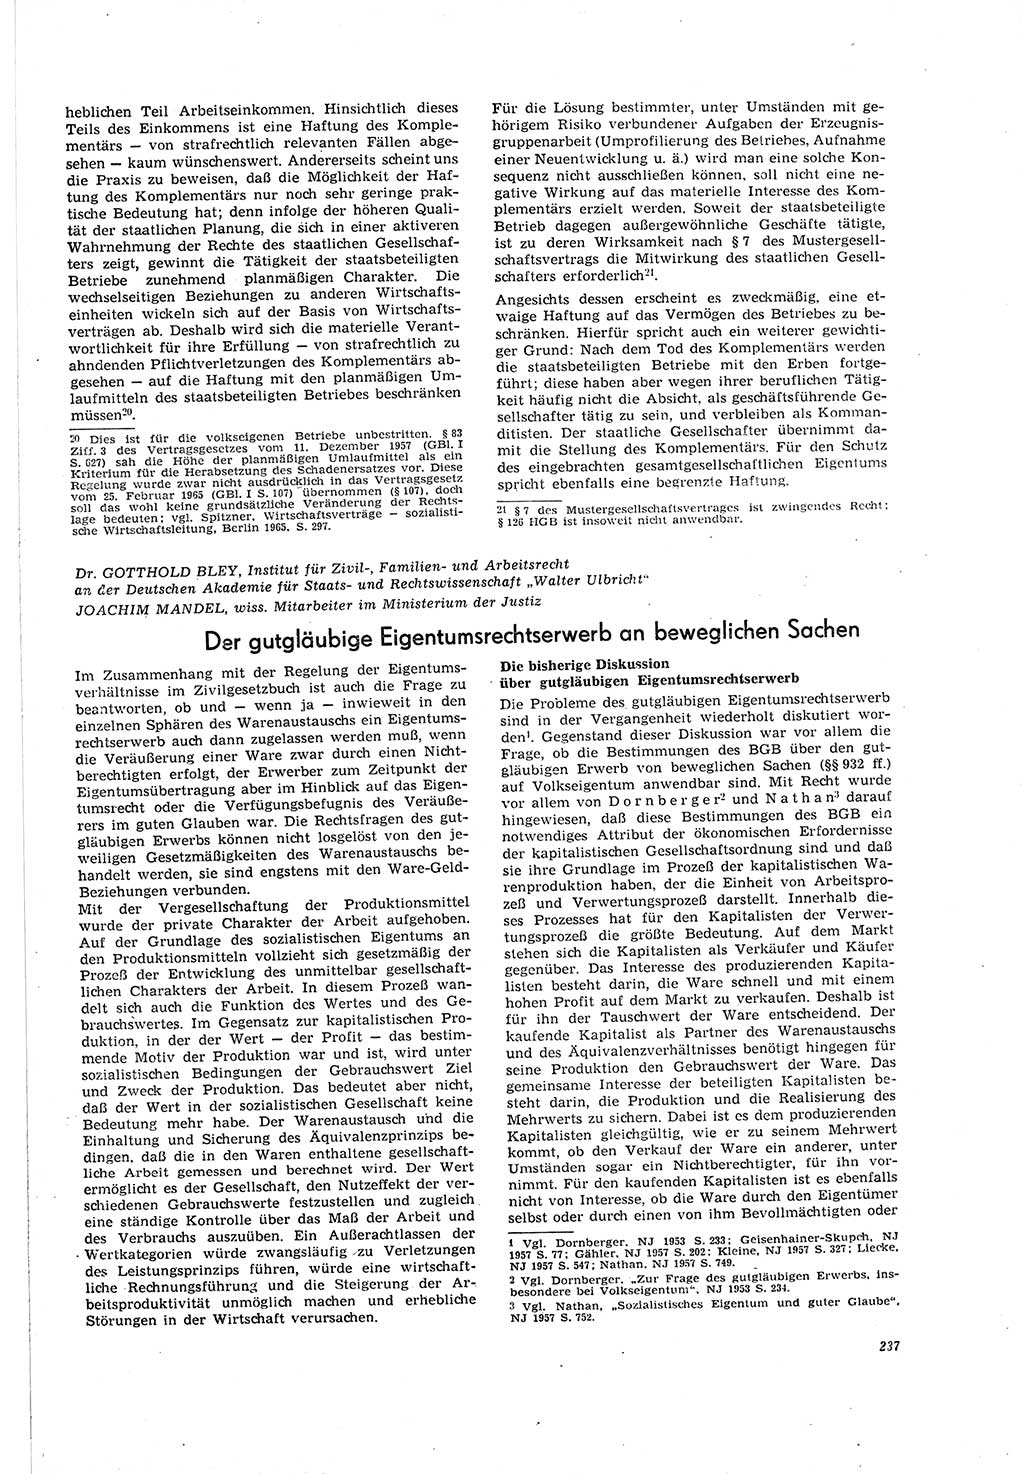 Neue Justiz (NJ), Zeitschrift für Recht und Rechtswissenschaft [Deutsche Demokratische Republik (DDR)], 20. Jahrgang 1966, Seite 237 (NJ DDR 1966, S. 237)